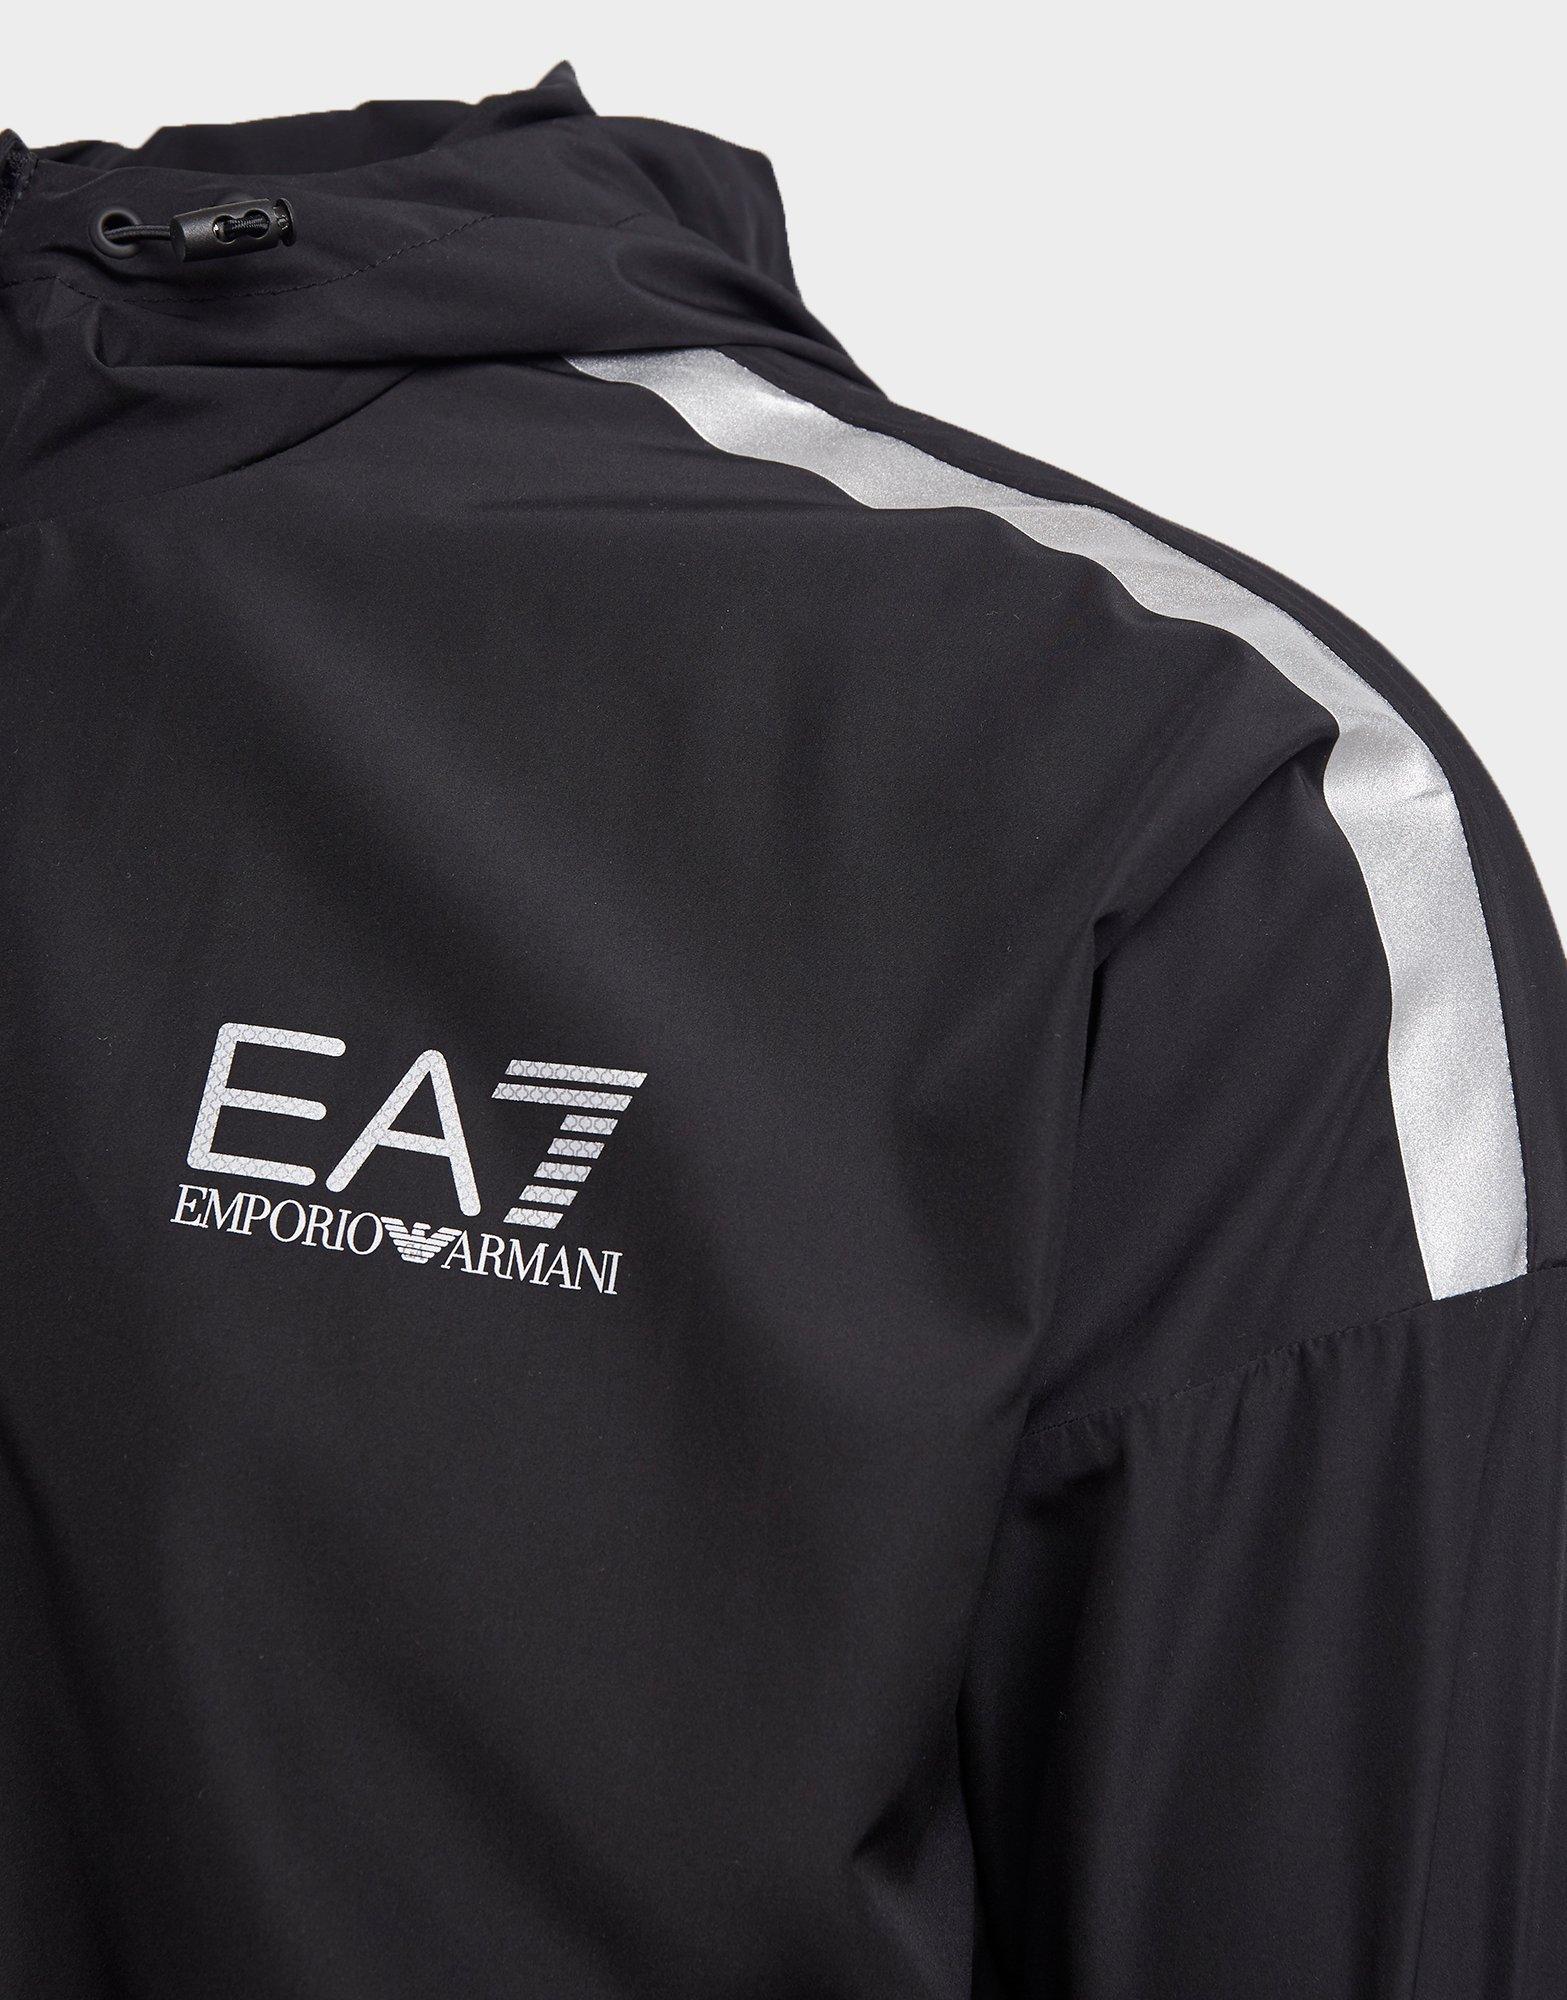 ea7 reflective jacket